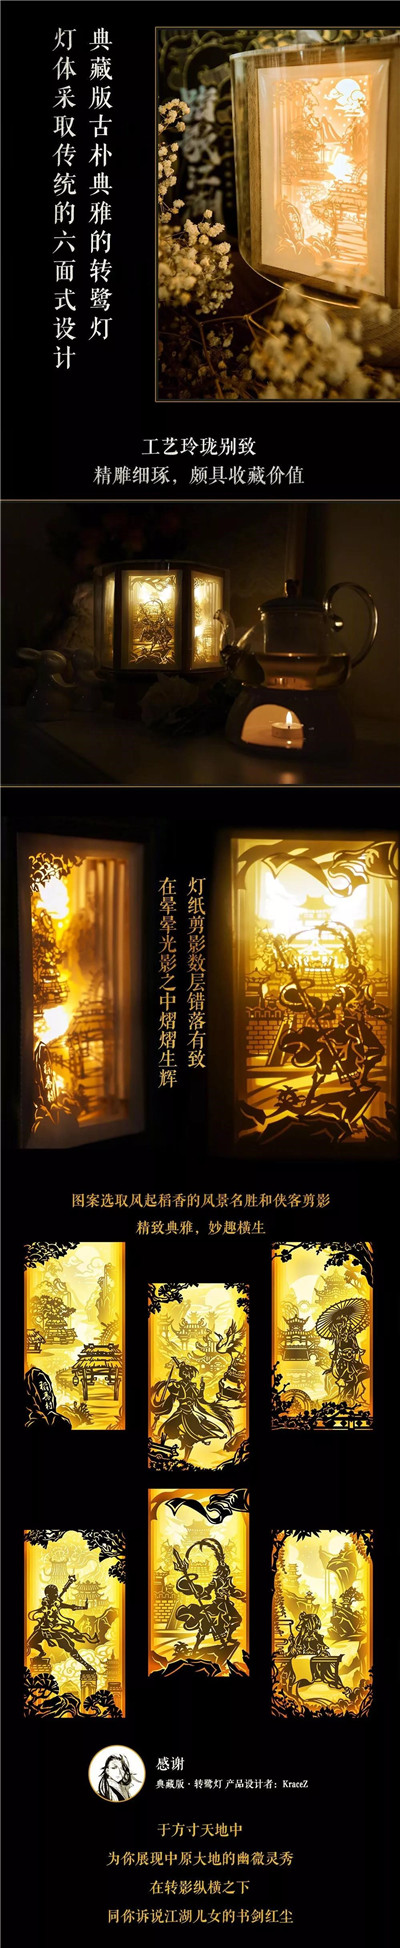 剑网3大IP第二张音乐专辑《踏歌江湖》实体版今日发售